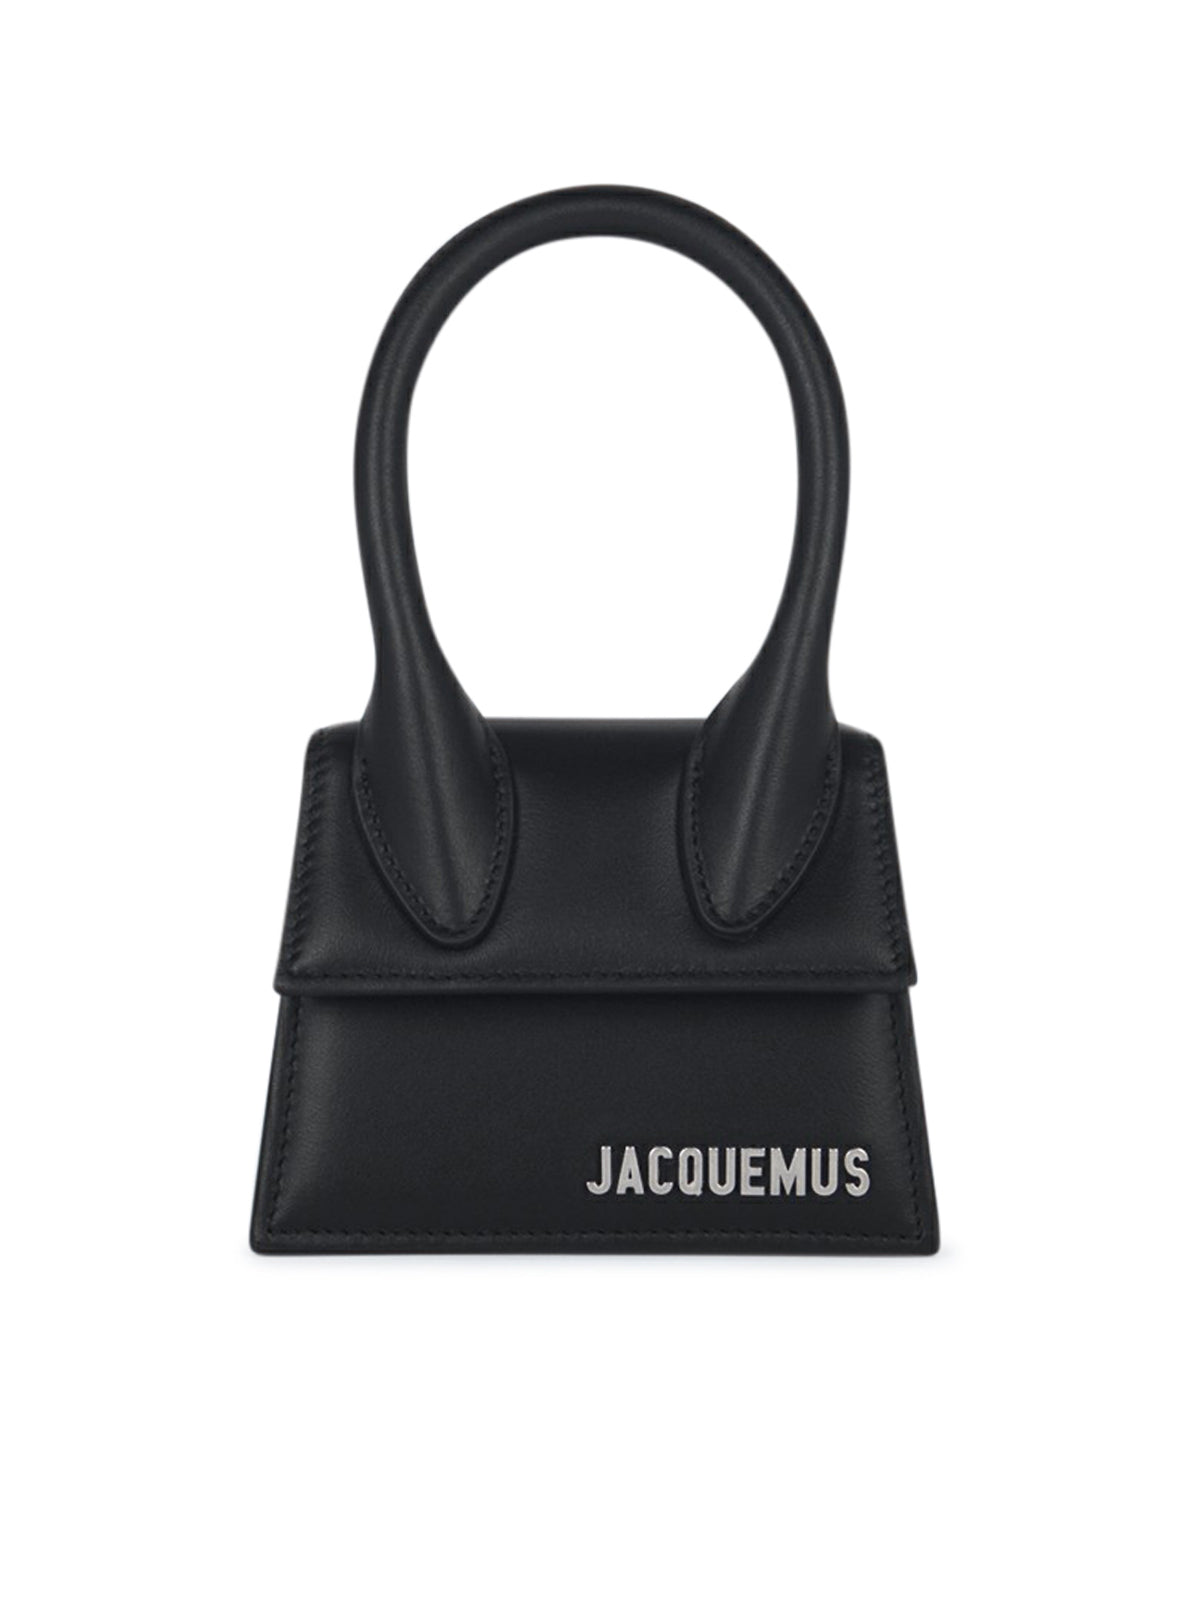 30% jacquemus bag man